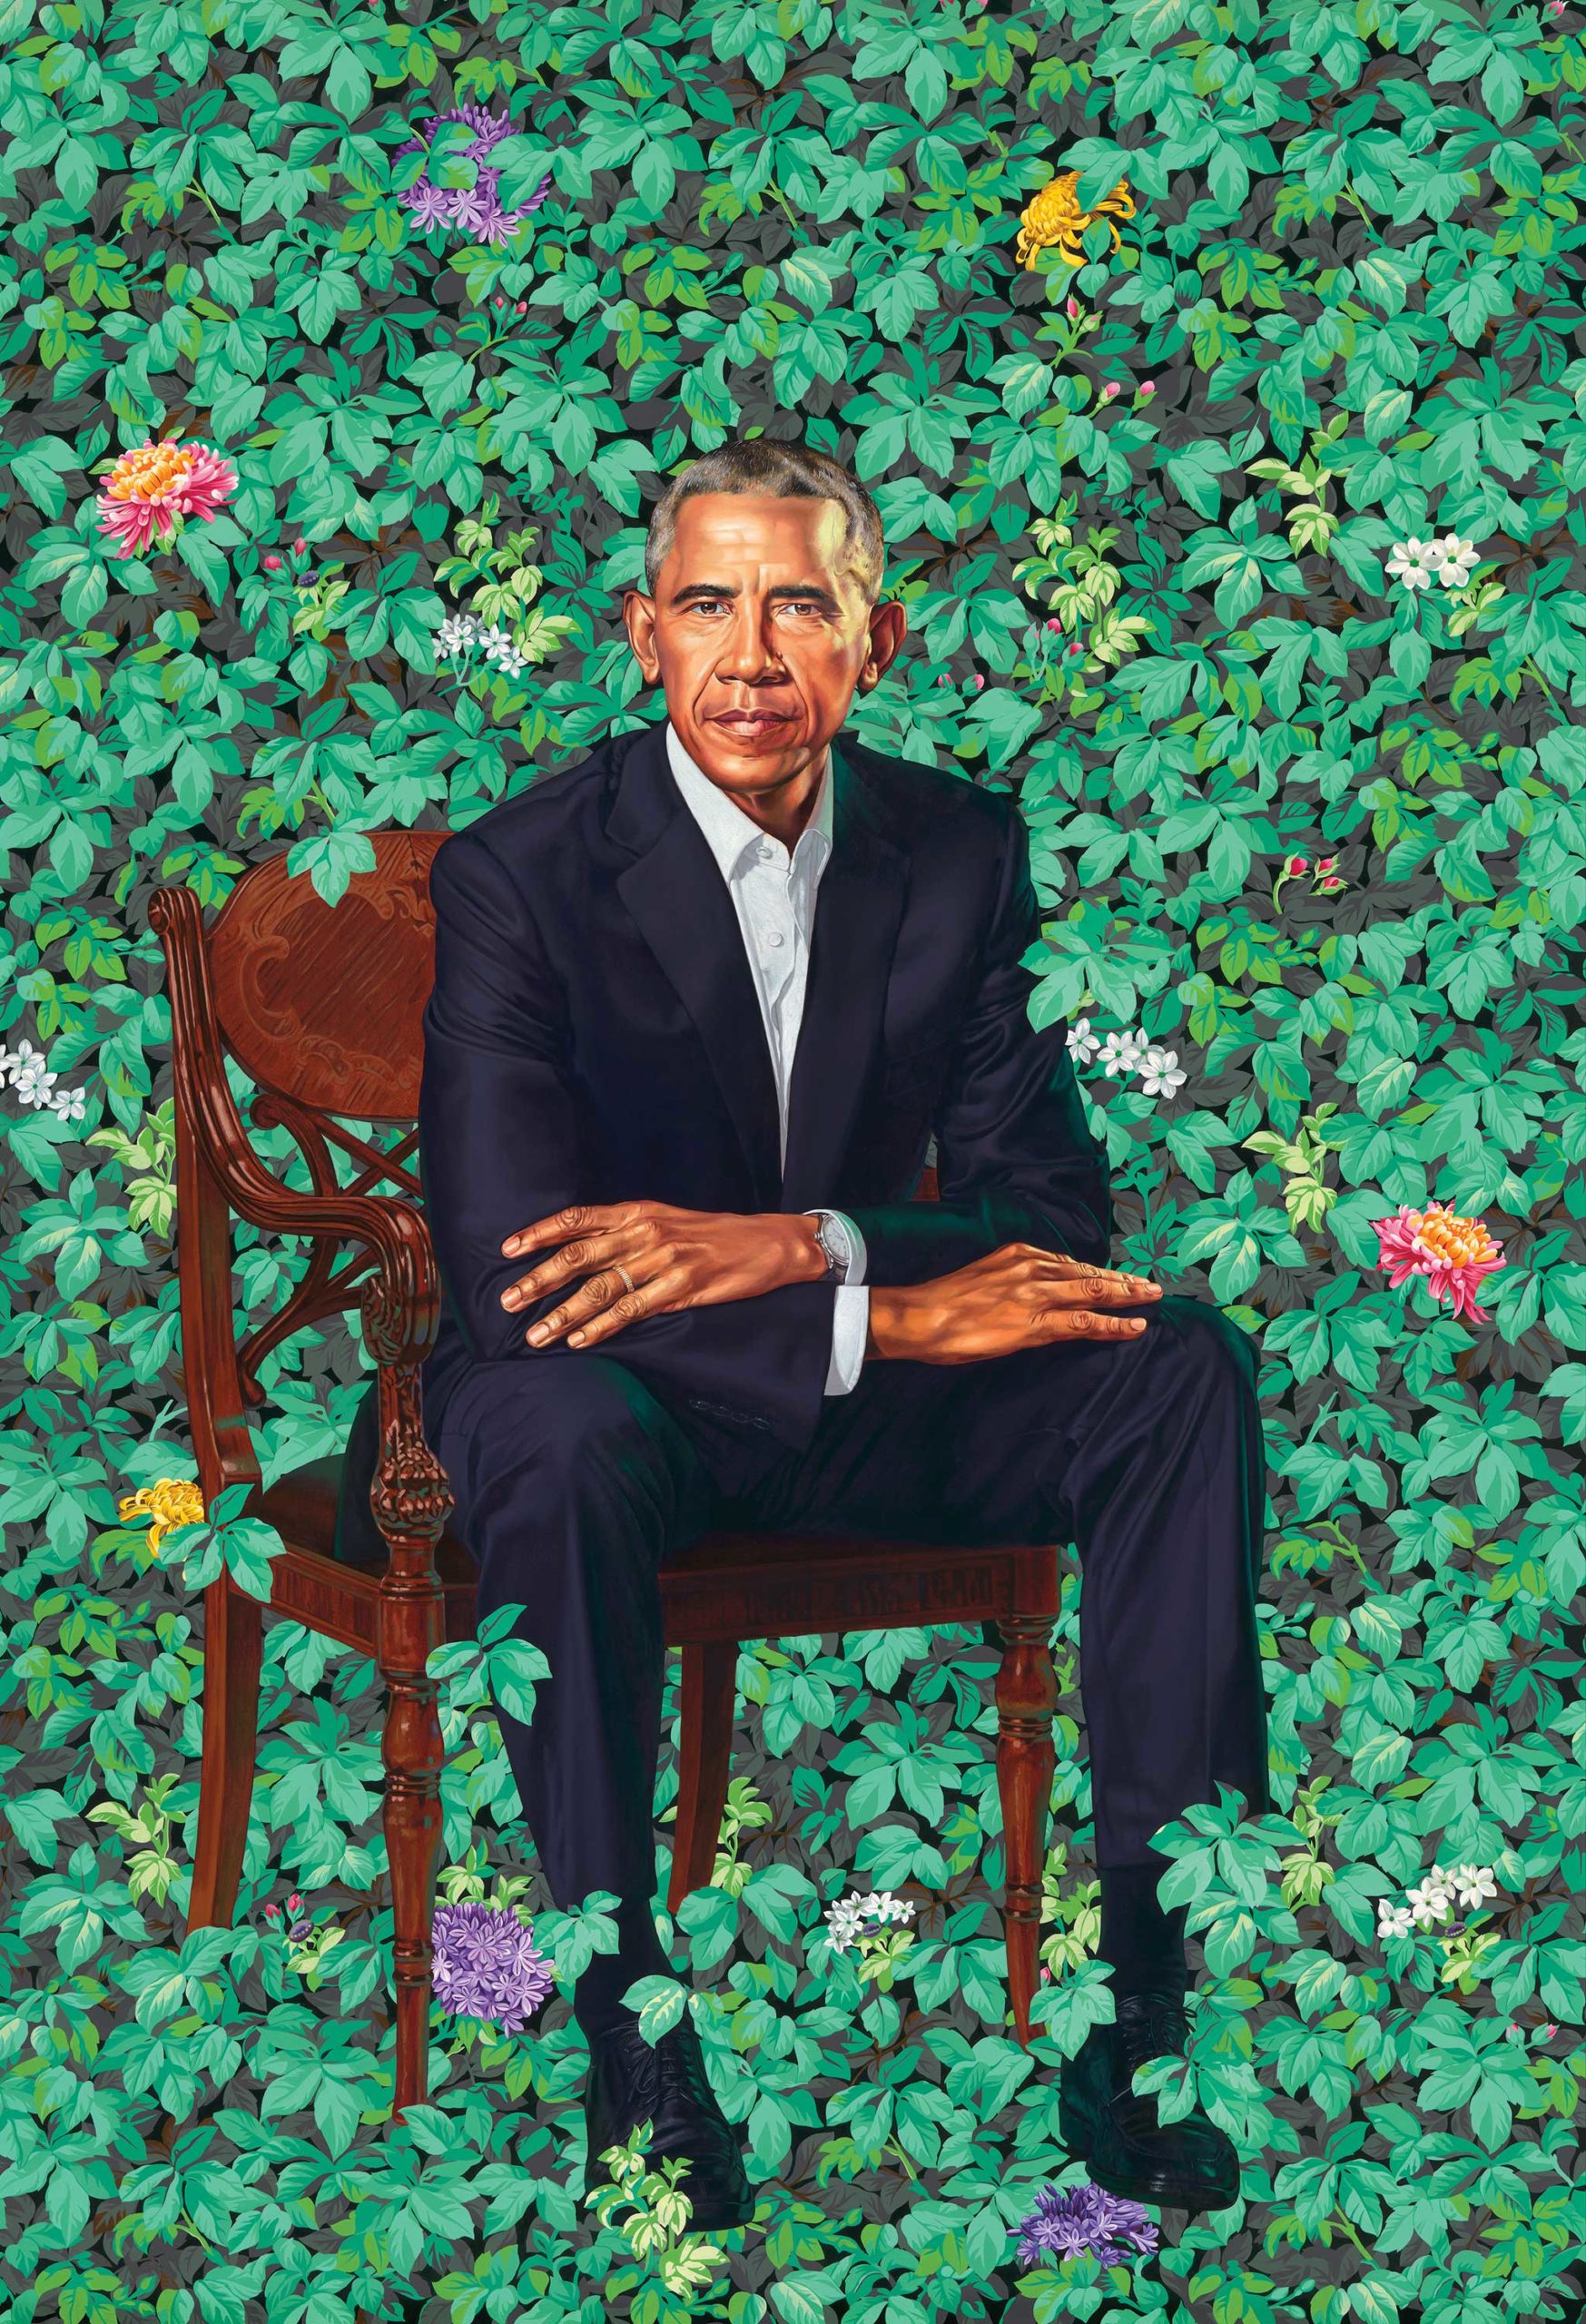 Kehinde Wiley portrait of Barack Obama